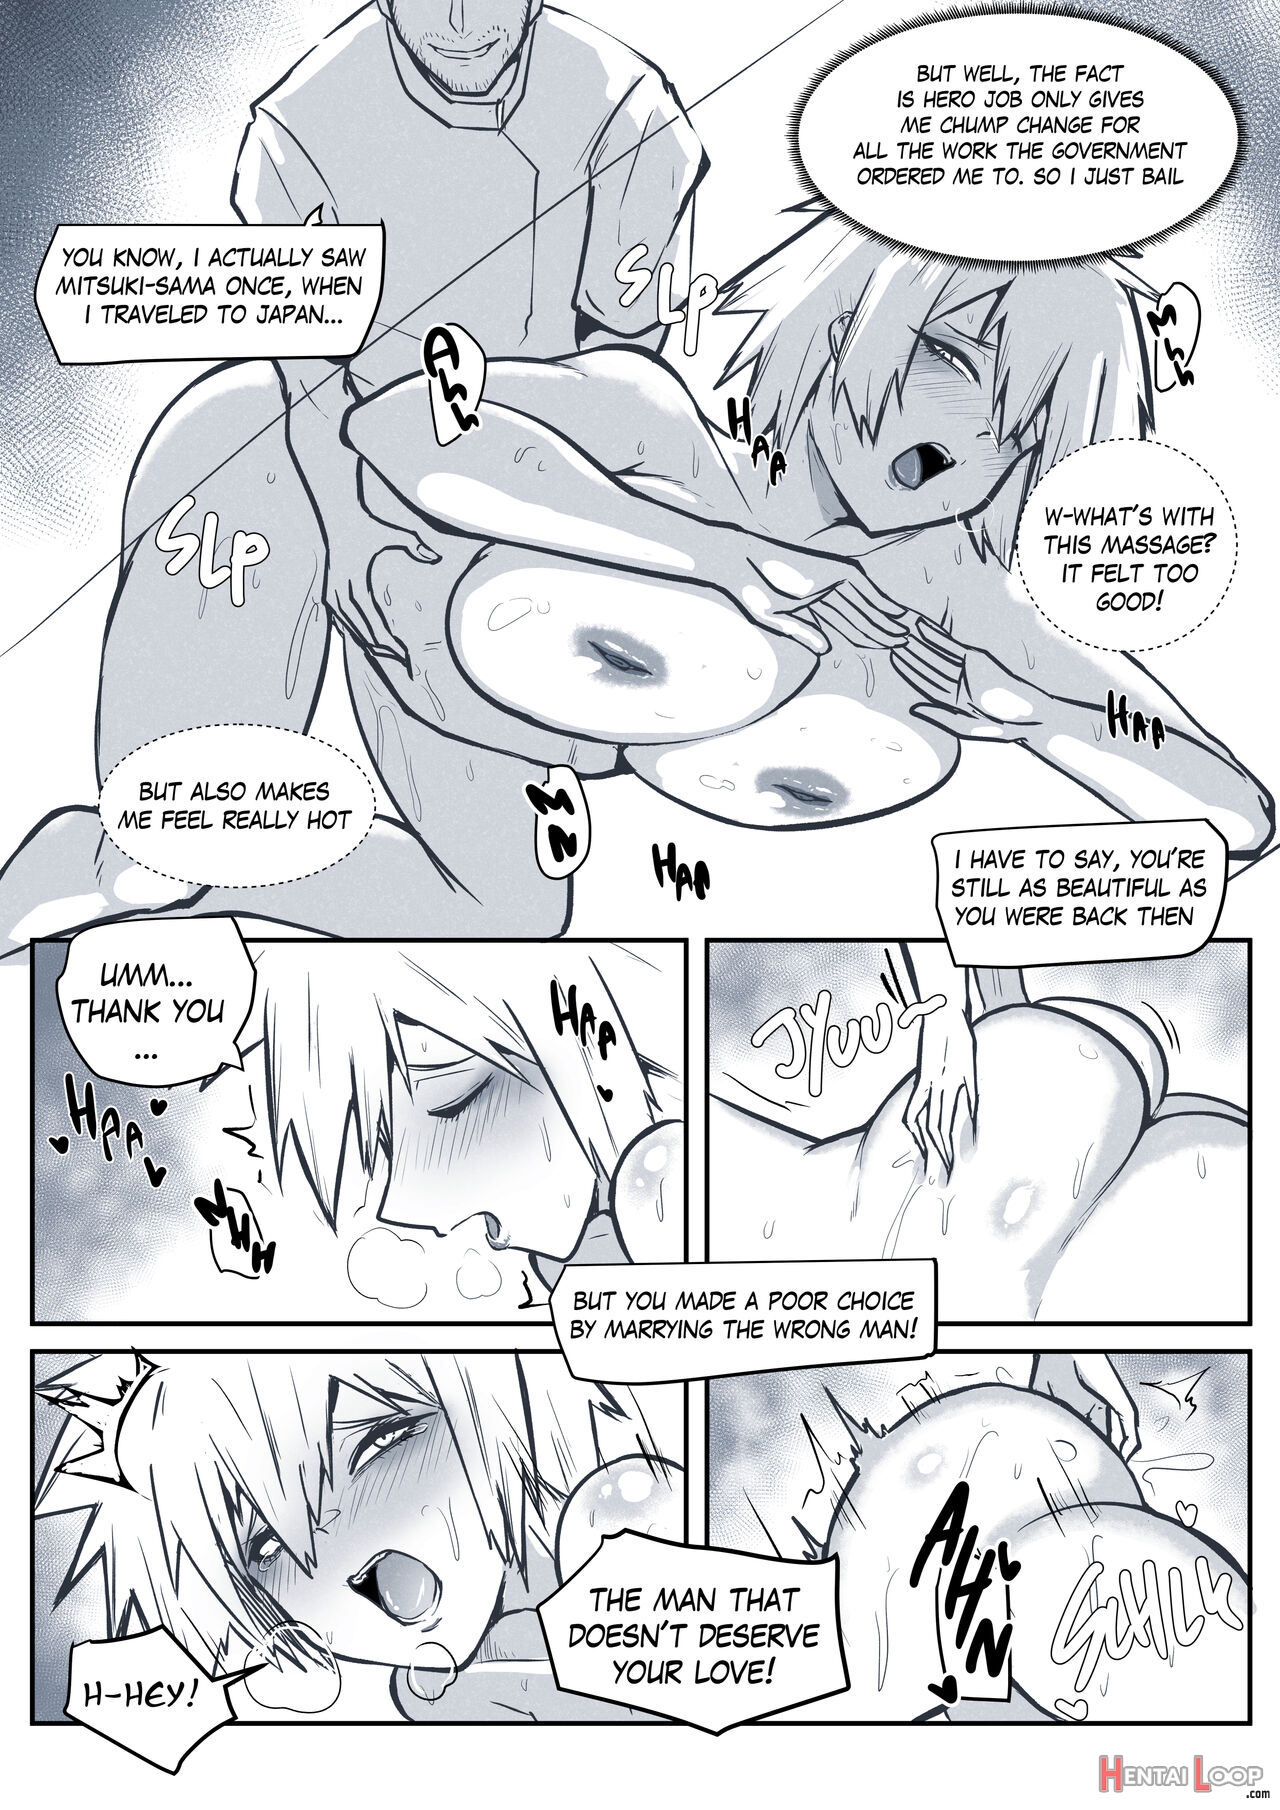 Mitsuki Massage Day page 3